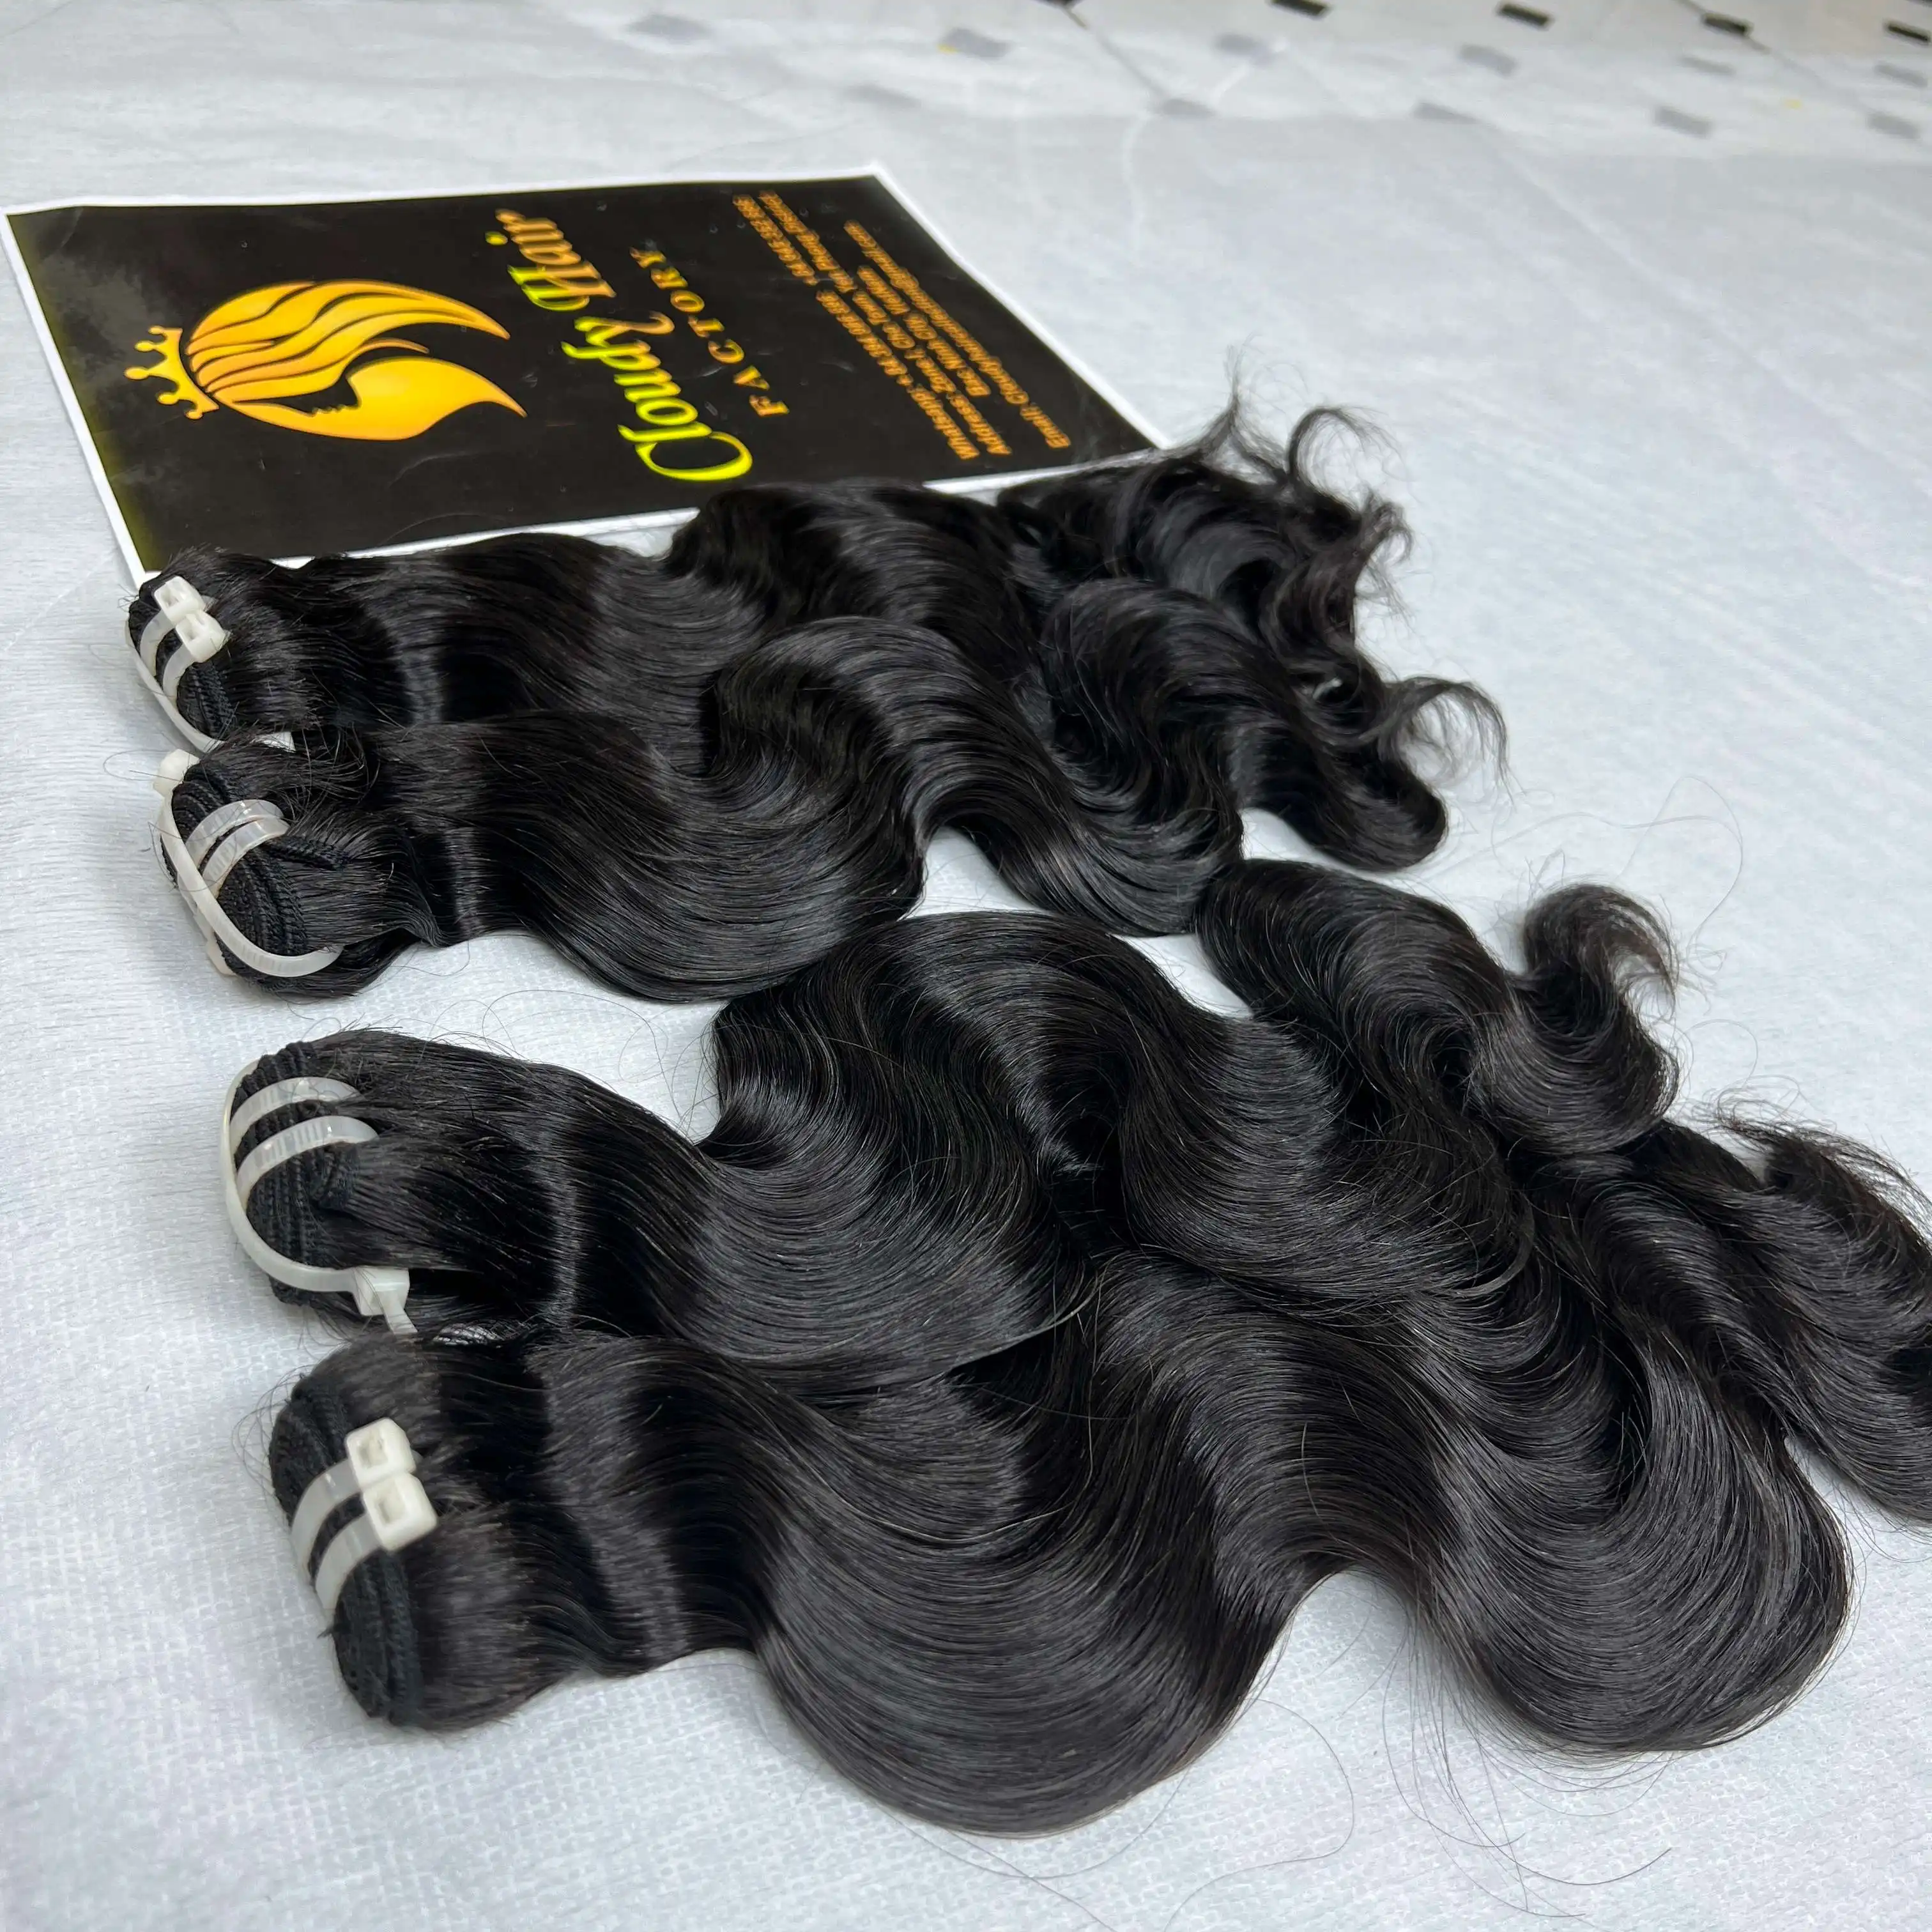 Cloudy Hair Company Venta al por mayor Paquetes de cabello virgen ondulado de cuerpo barato de Vietnam 100% Extensiones de cabello humano crudo